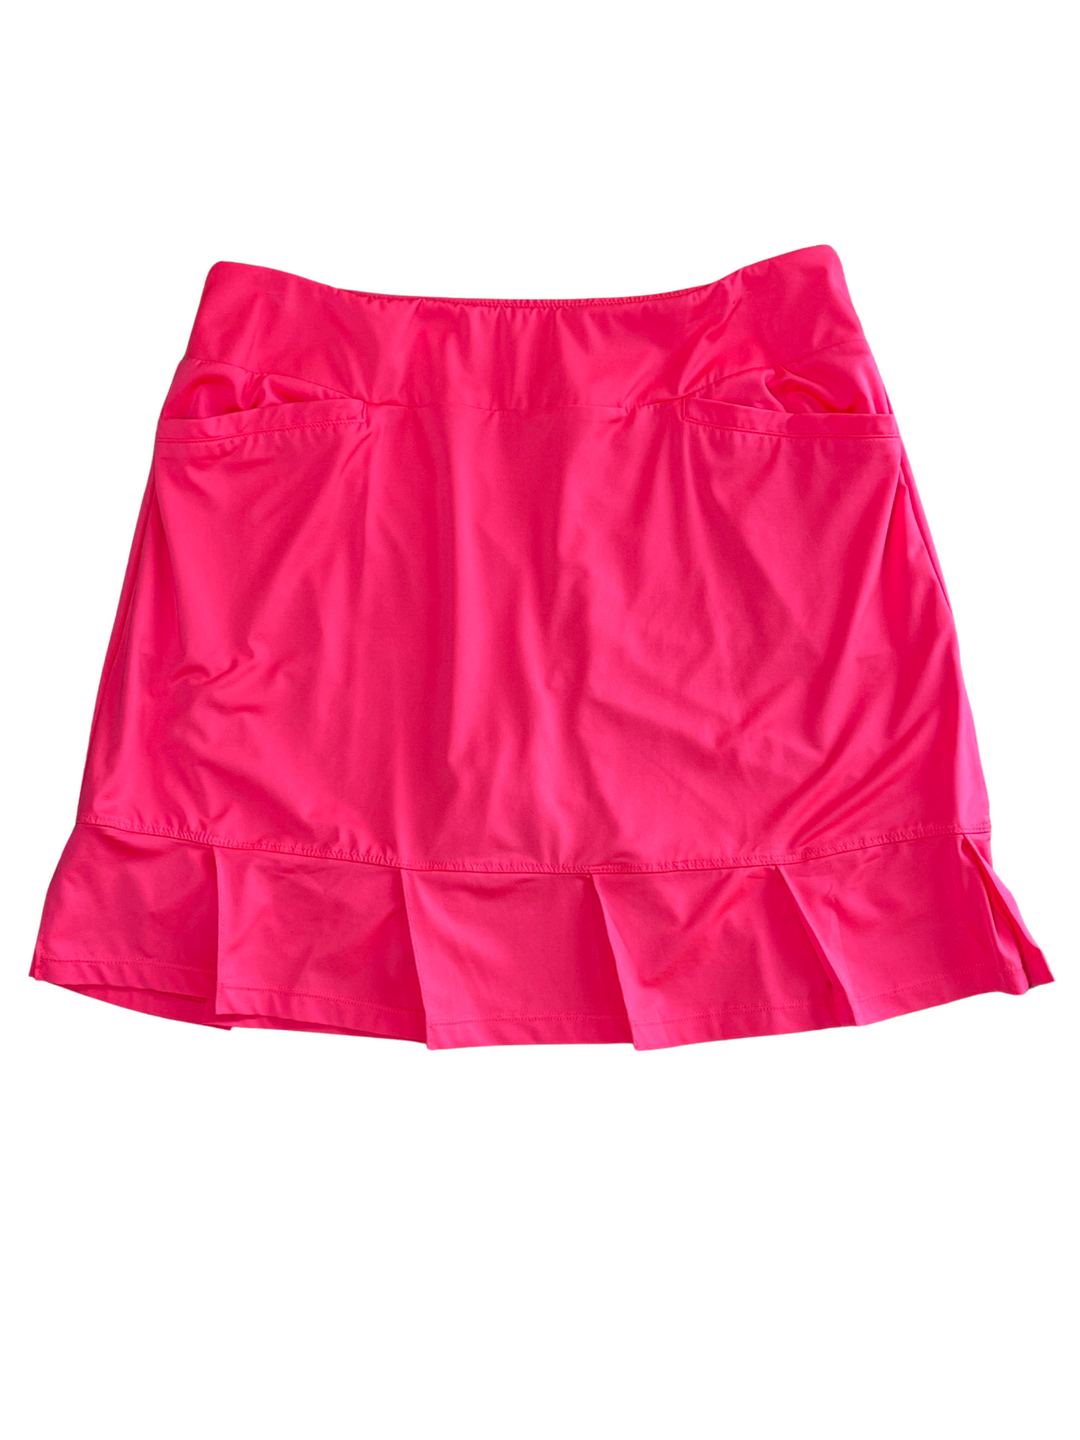 Tail Neon Pink Skort with Pleats- Medium - Skorzie